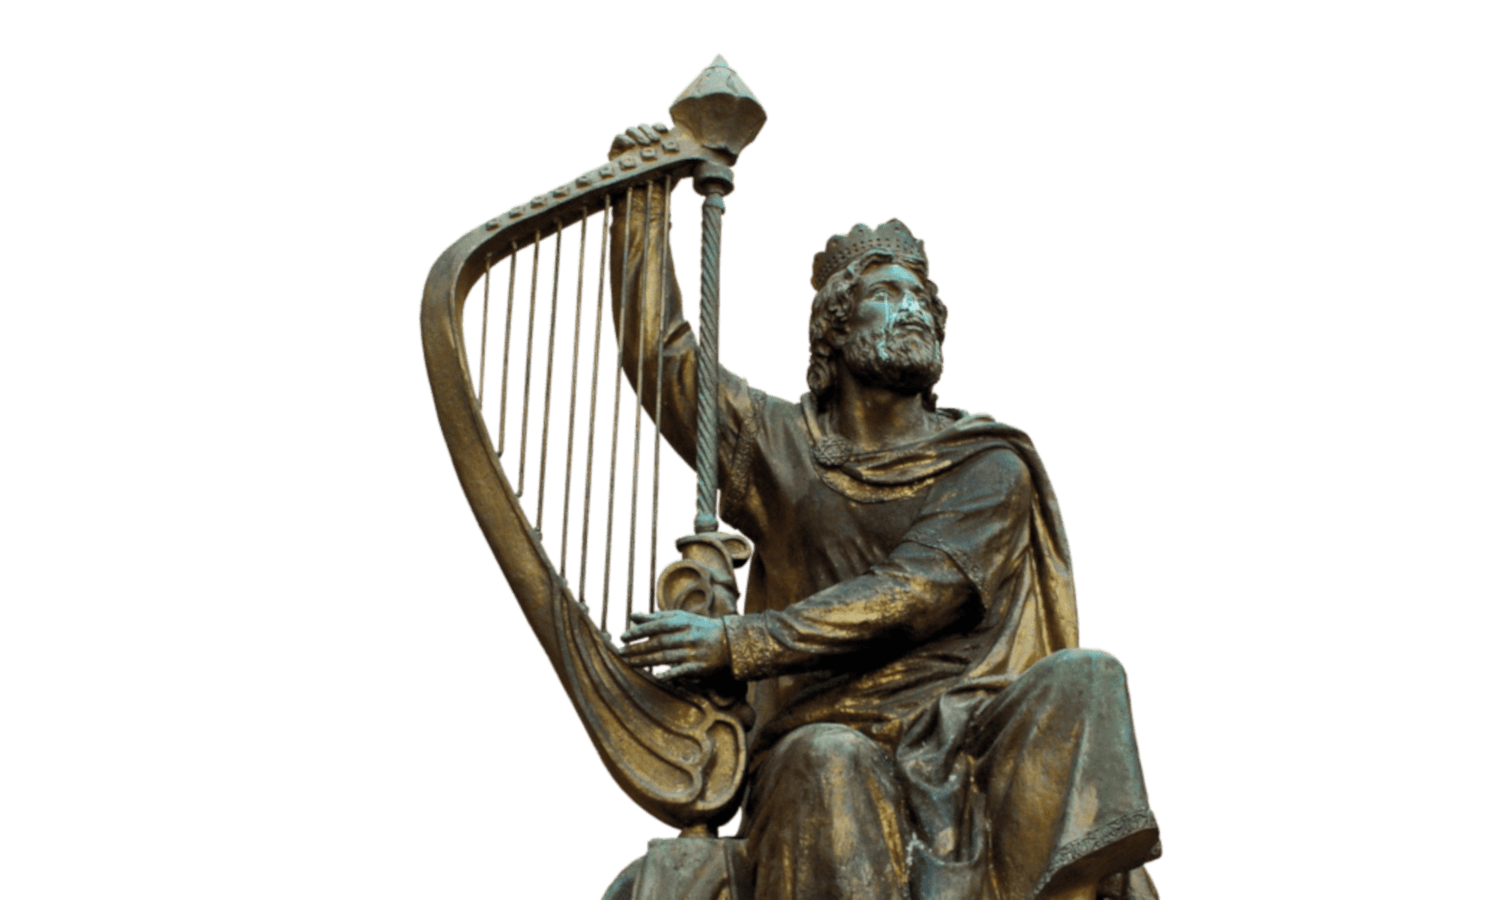 bronze-statue-of-David-playing-harp